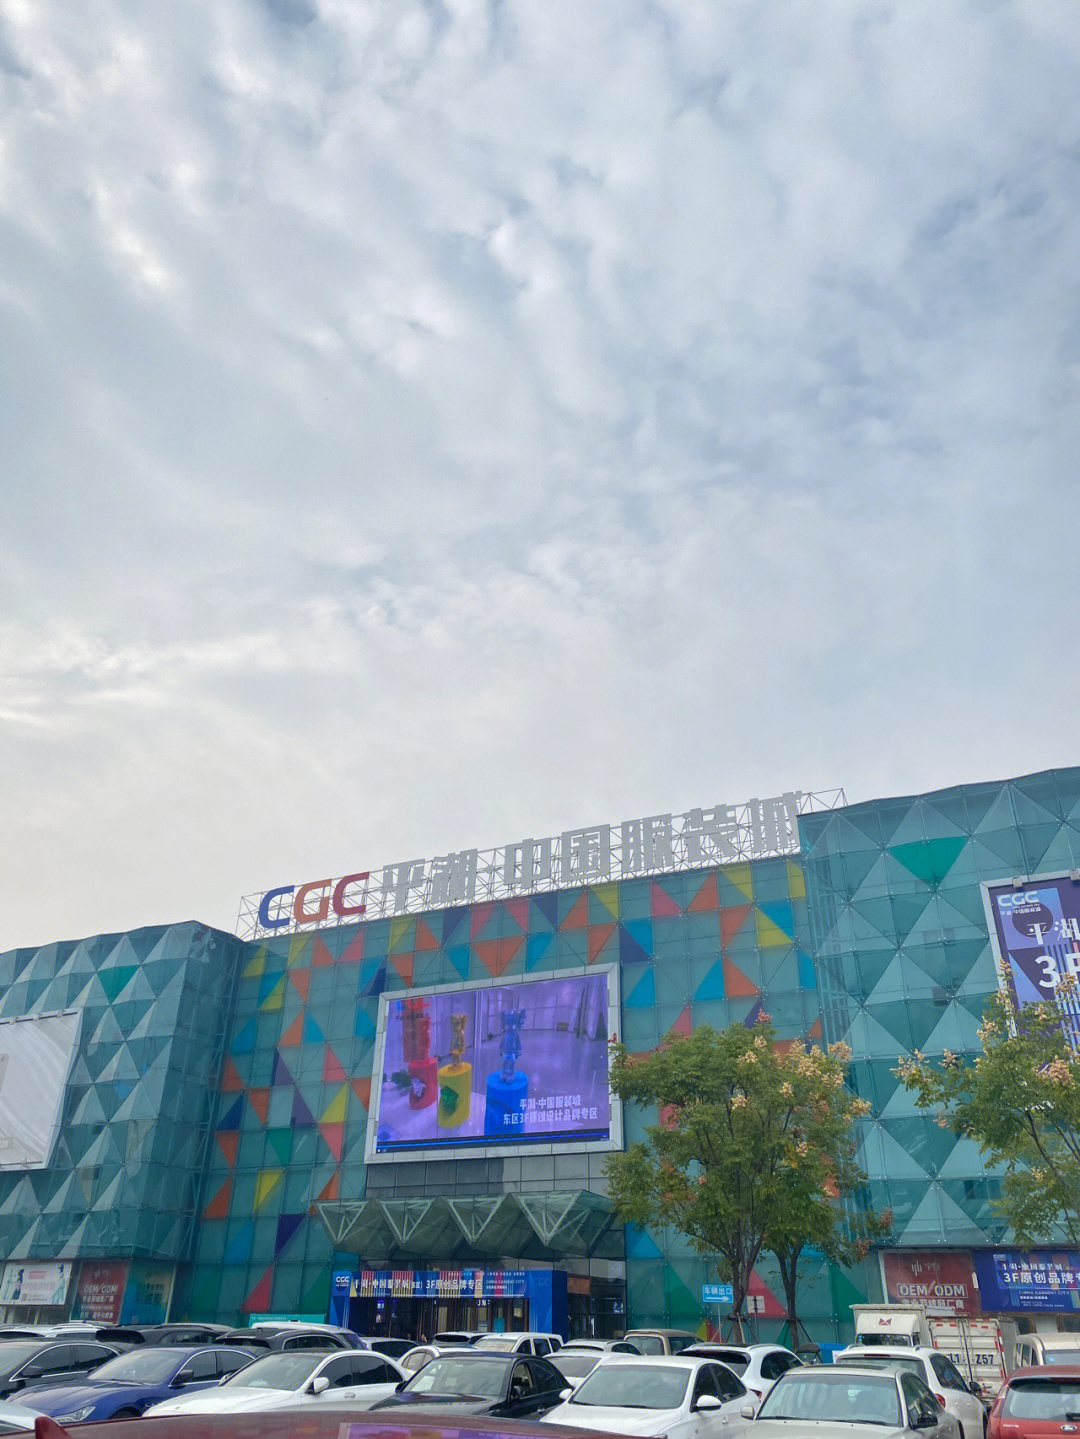 先分享下有用信息:95坐标:cgc平湖·中国服装城目前这个市场最成熟